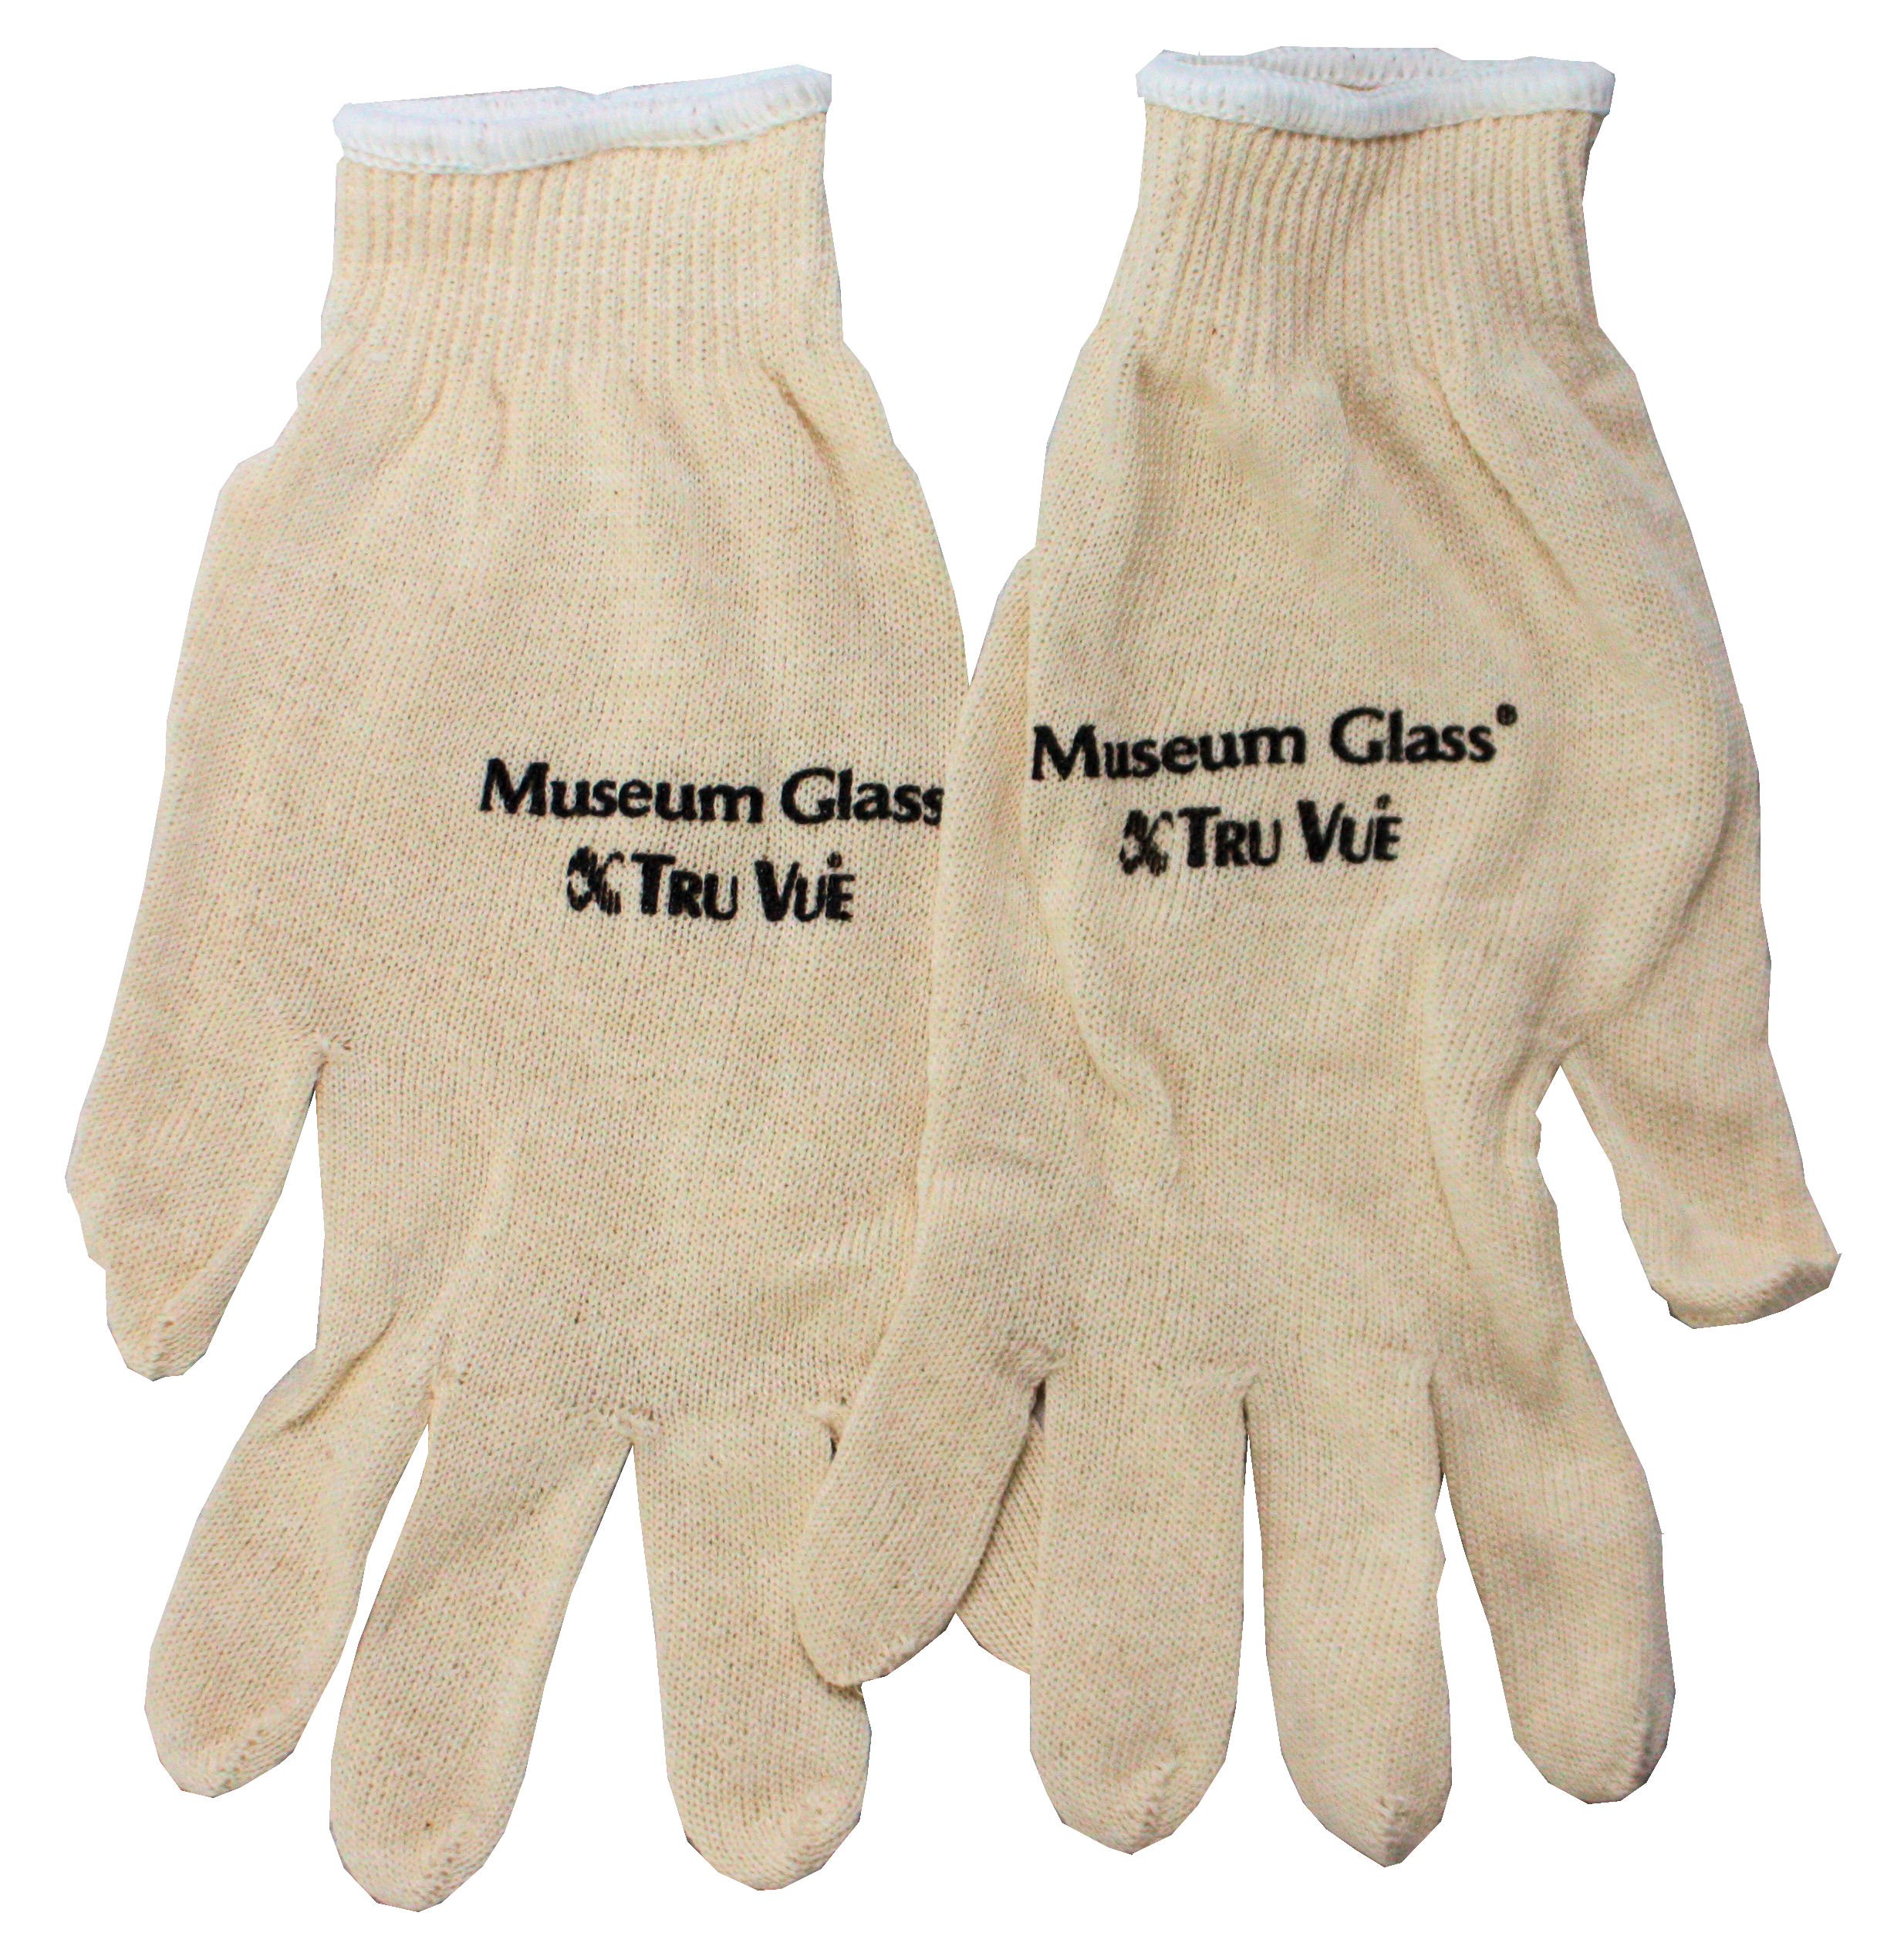 http://tru-vue.com/wp-content/uploads/2015/12/mg-cotton-gloves.jpg